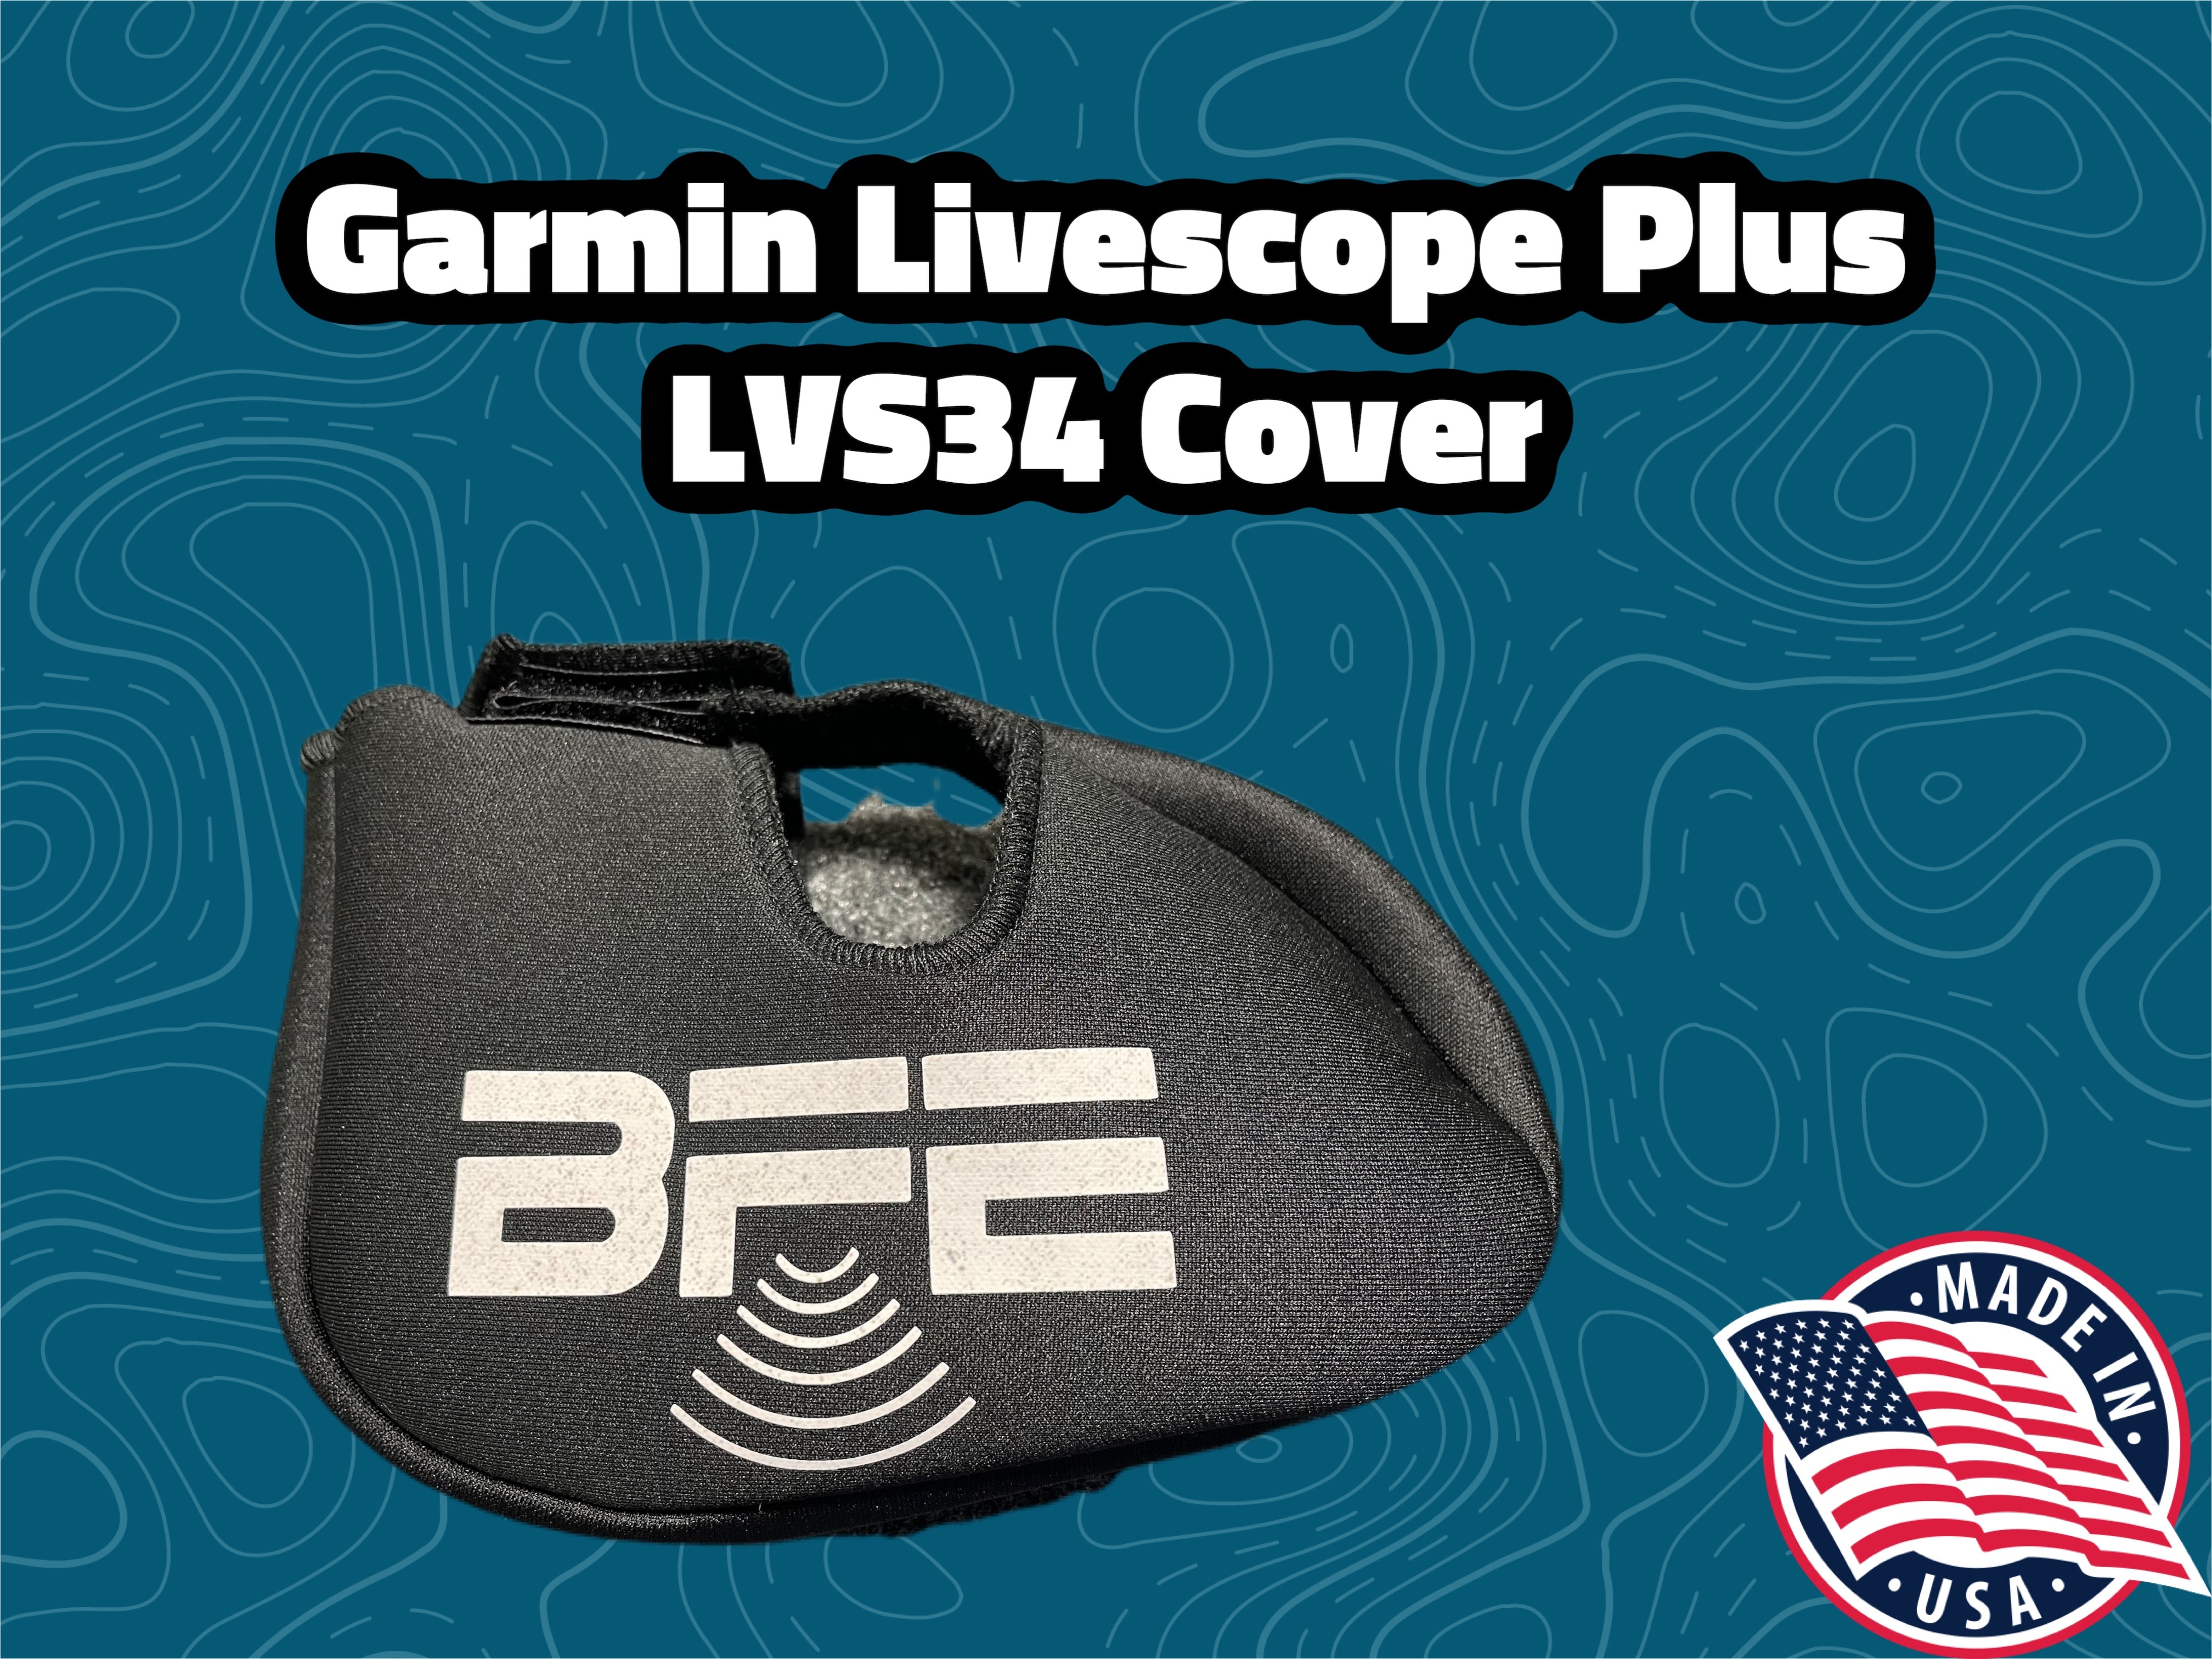 LVS34 Cover, Transducer Cover for Garmin Livescope Plus LVS34